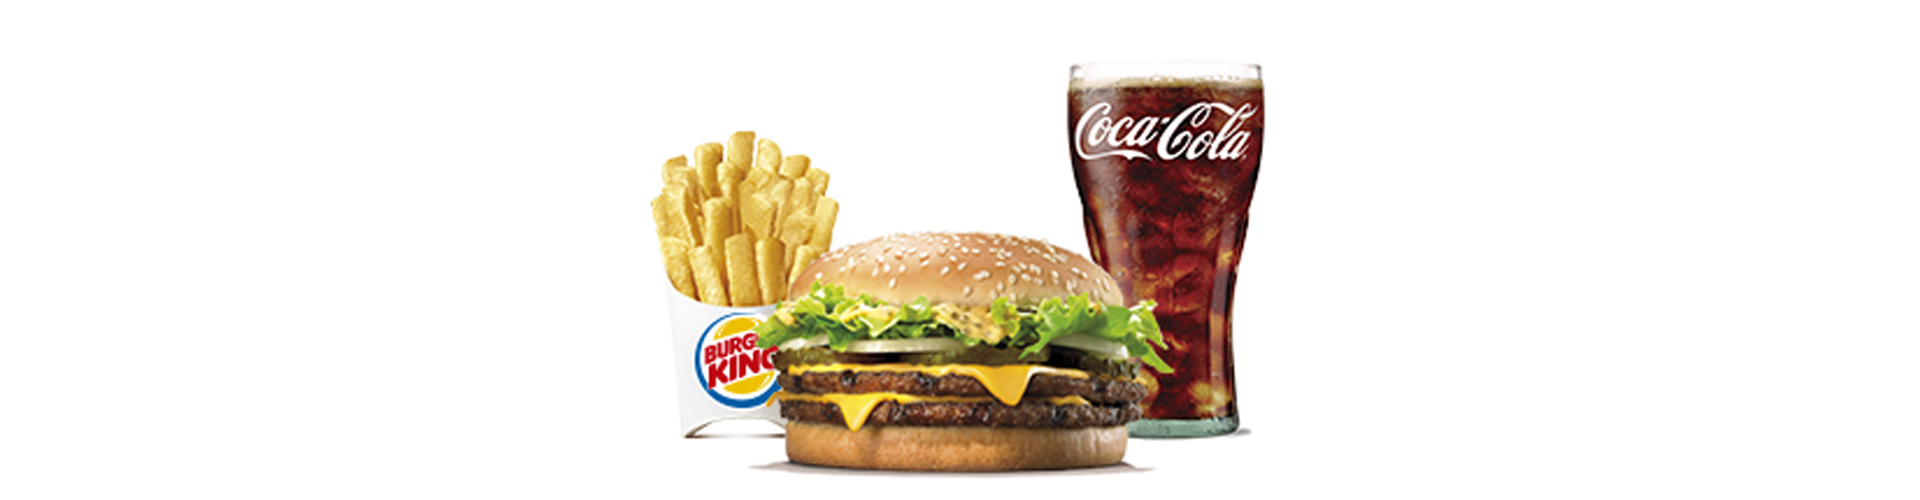 menu-big-king-burgerking-40001712-cocacola-aros